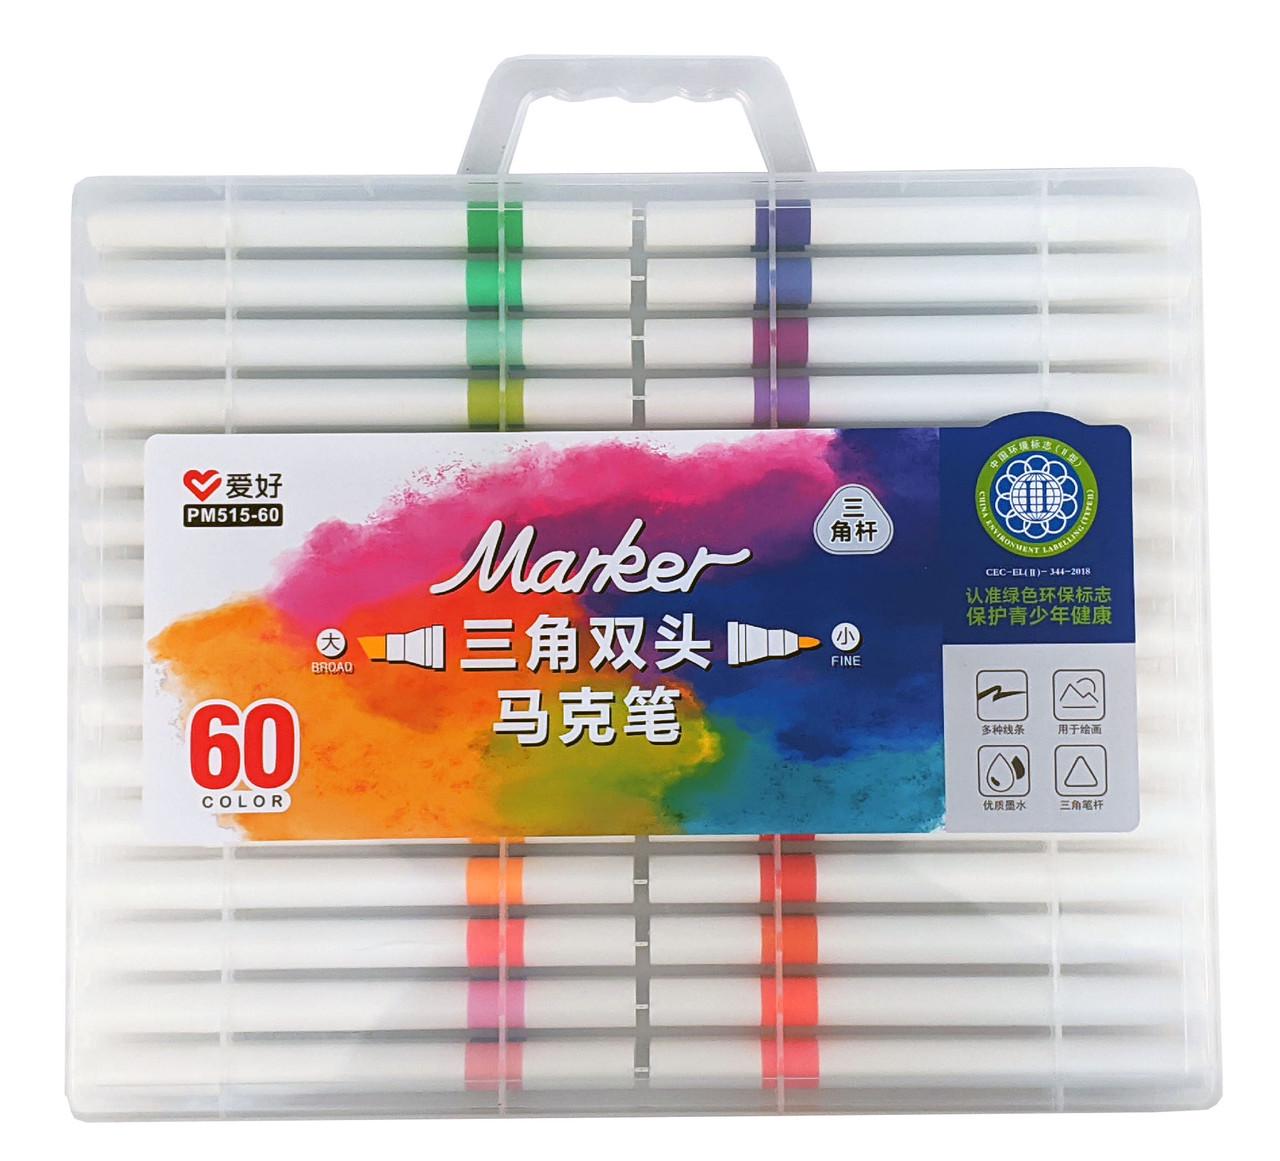 Набор скетч-маркеров для рисования двусторонних Aihao sketchmarker 60 шт. (PM515-60)